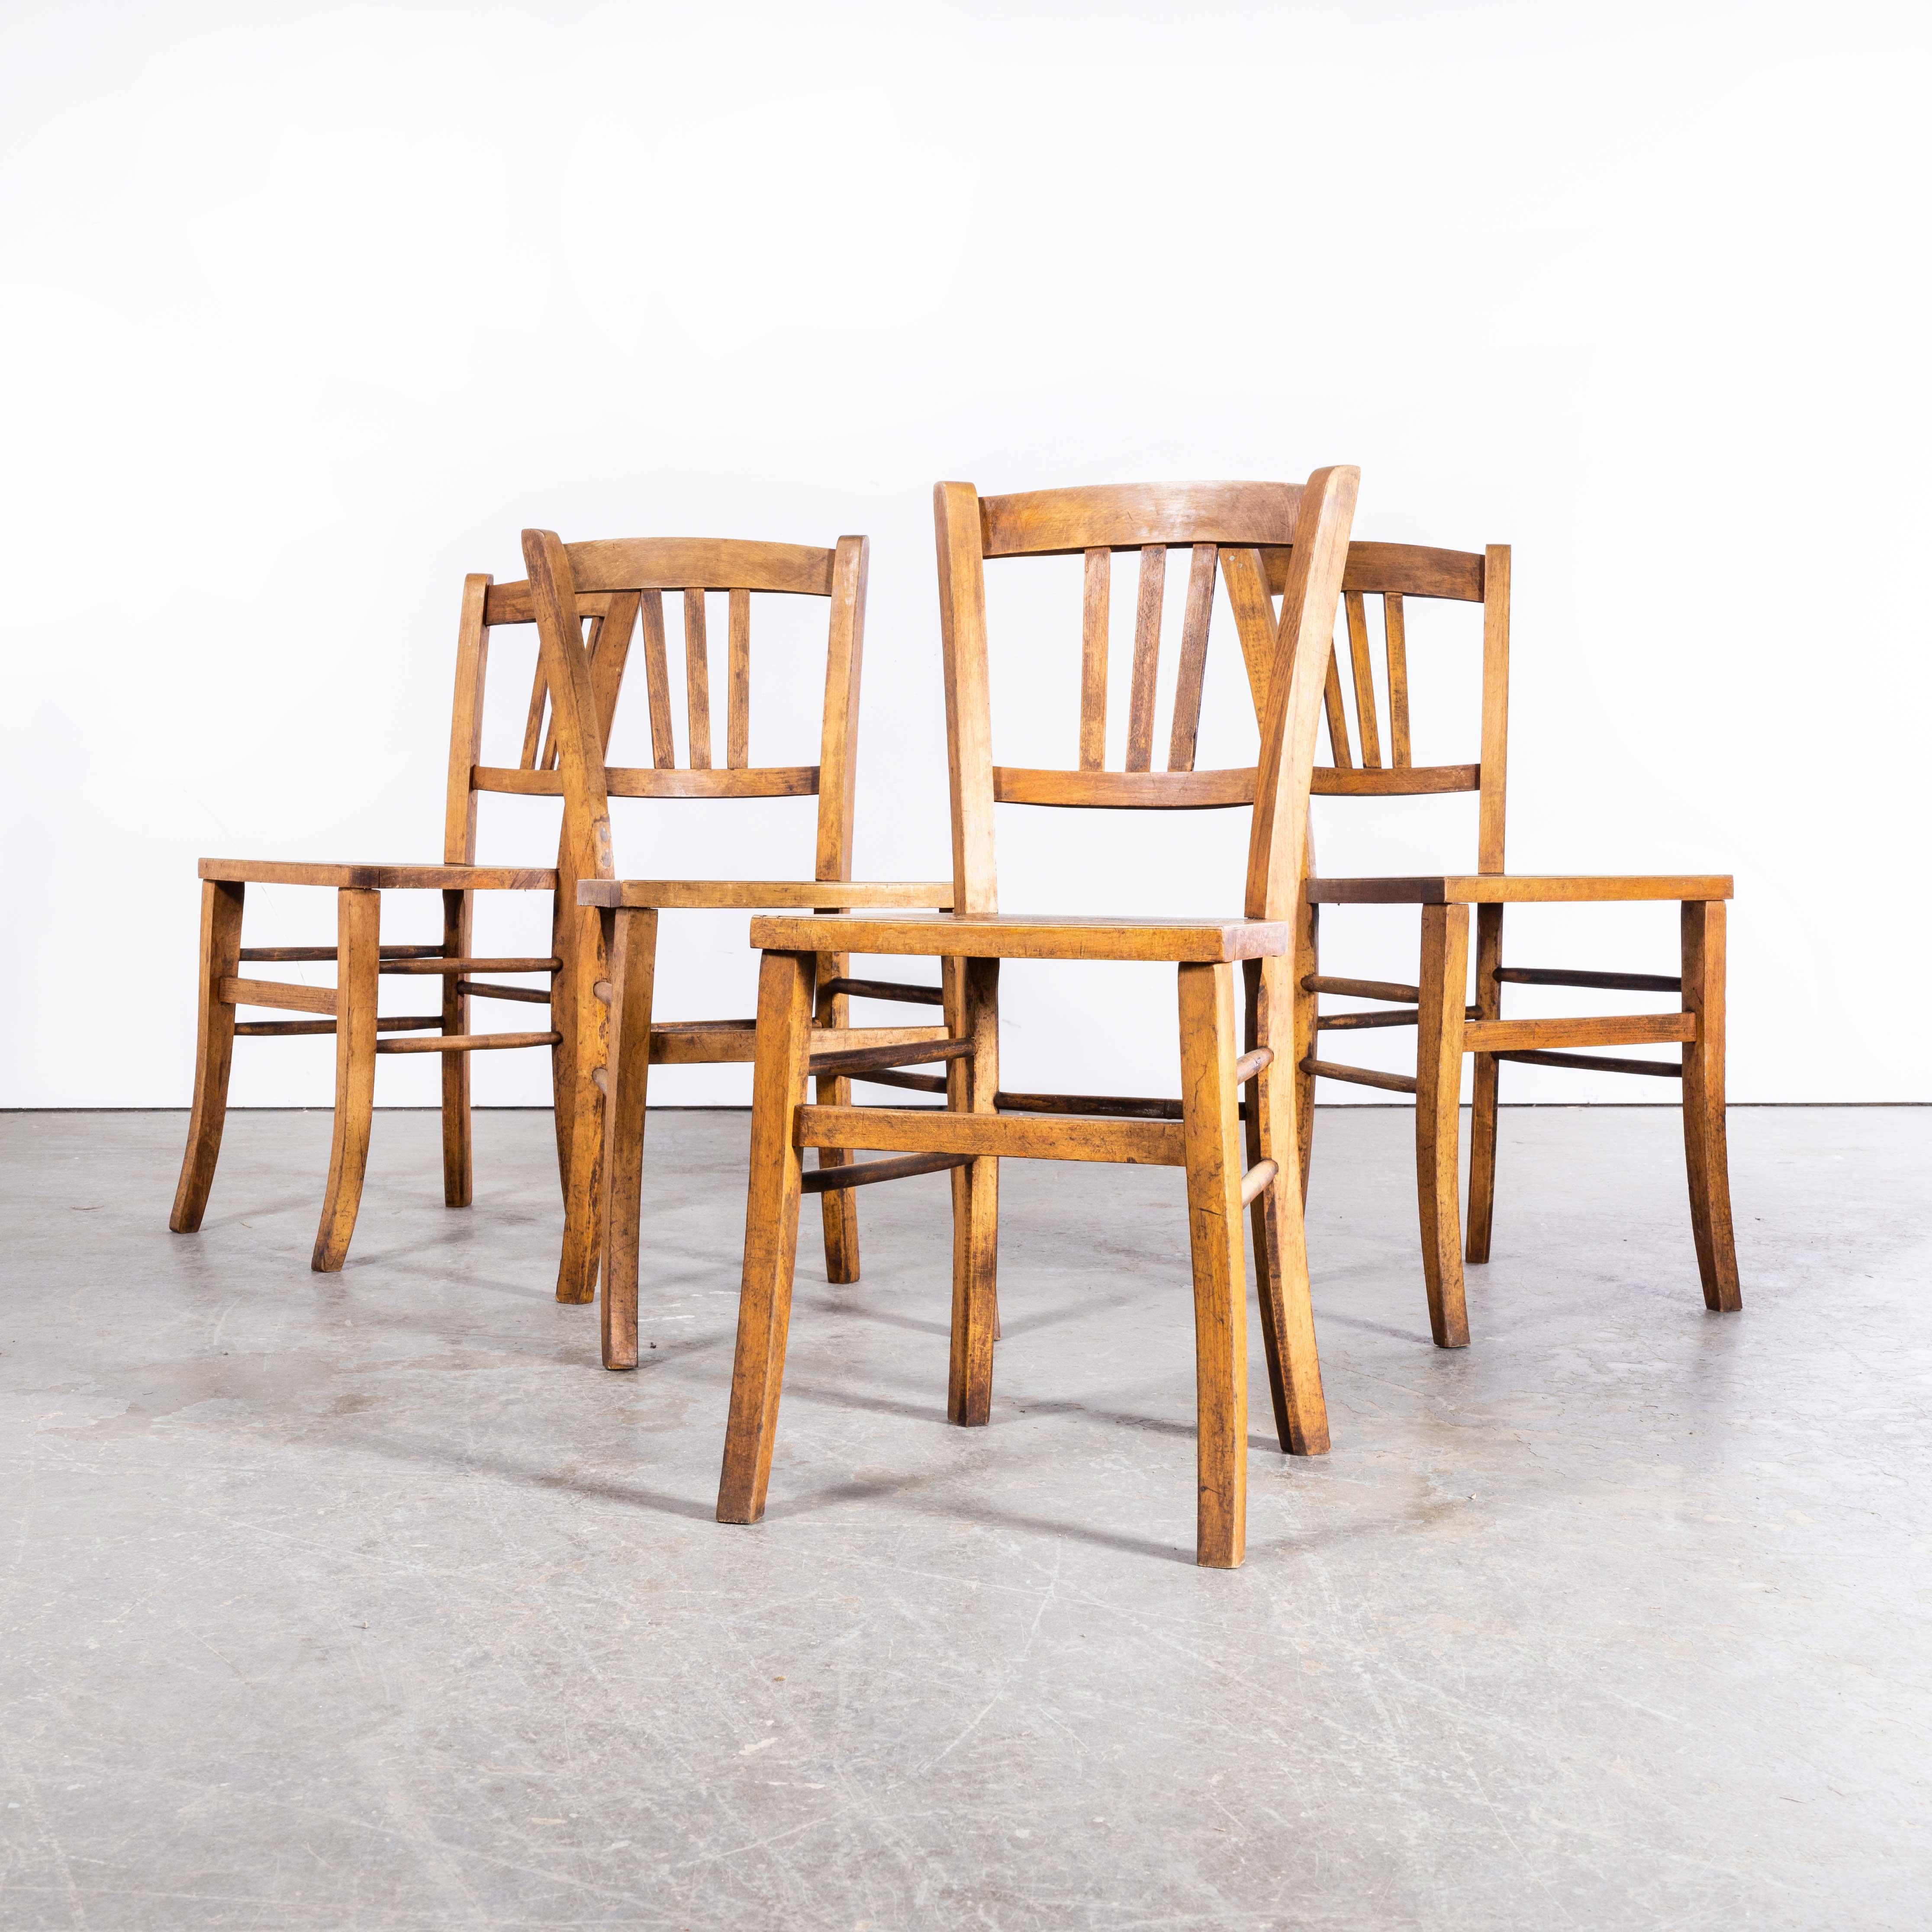 Chaise de salle à manger en bois courbé à assise gaufrée Luterma des années 1930 - ensemble de quatre. Le procédé de cintrage du hêtre à la vapeur pour créer des chaises élégantes a été découvert et développé par Thonet, mais lorsque ses brevets ont